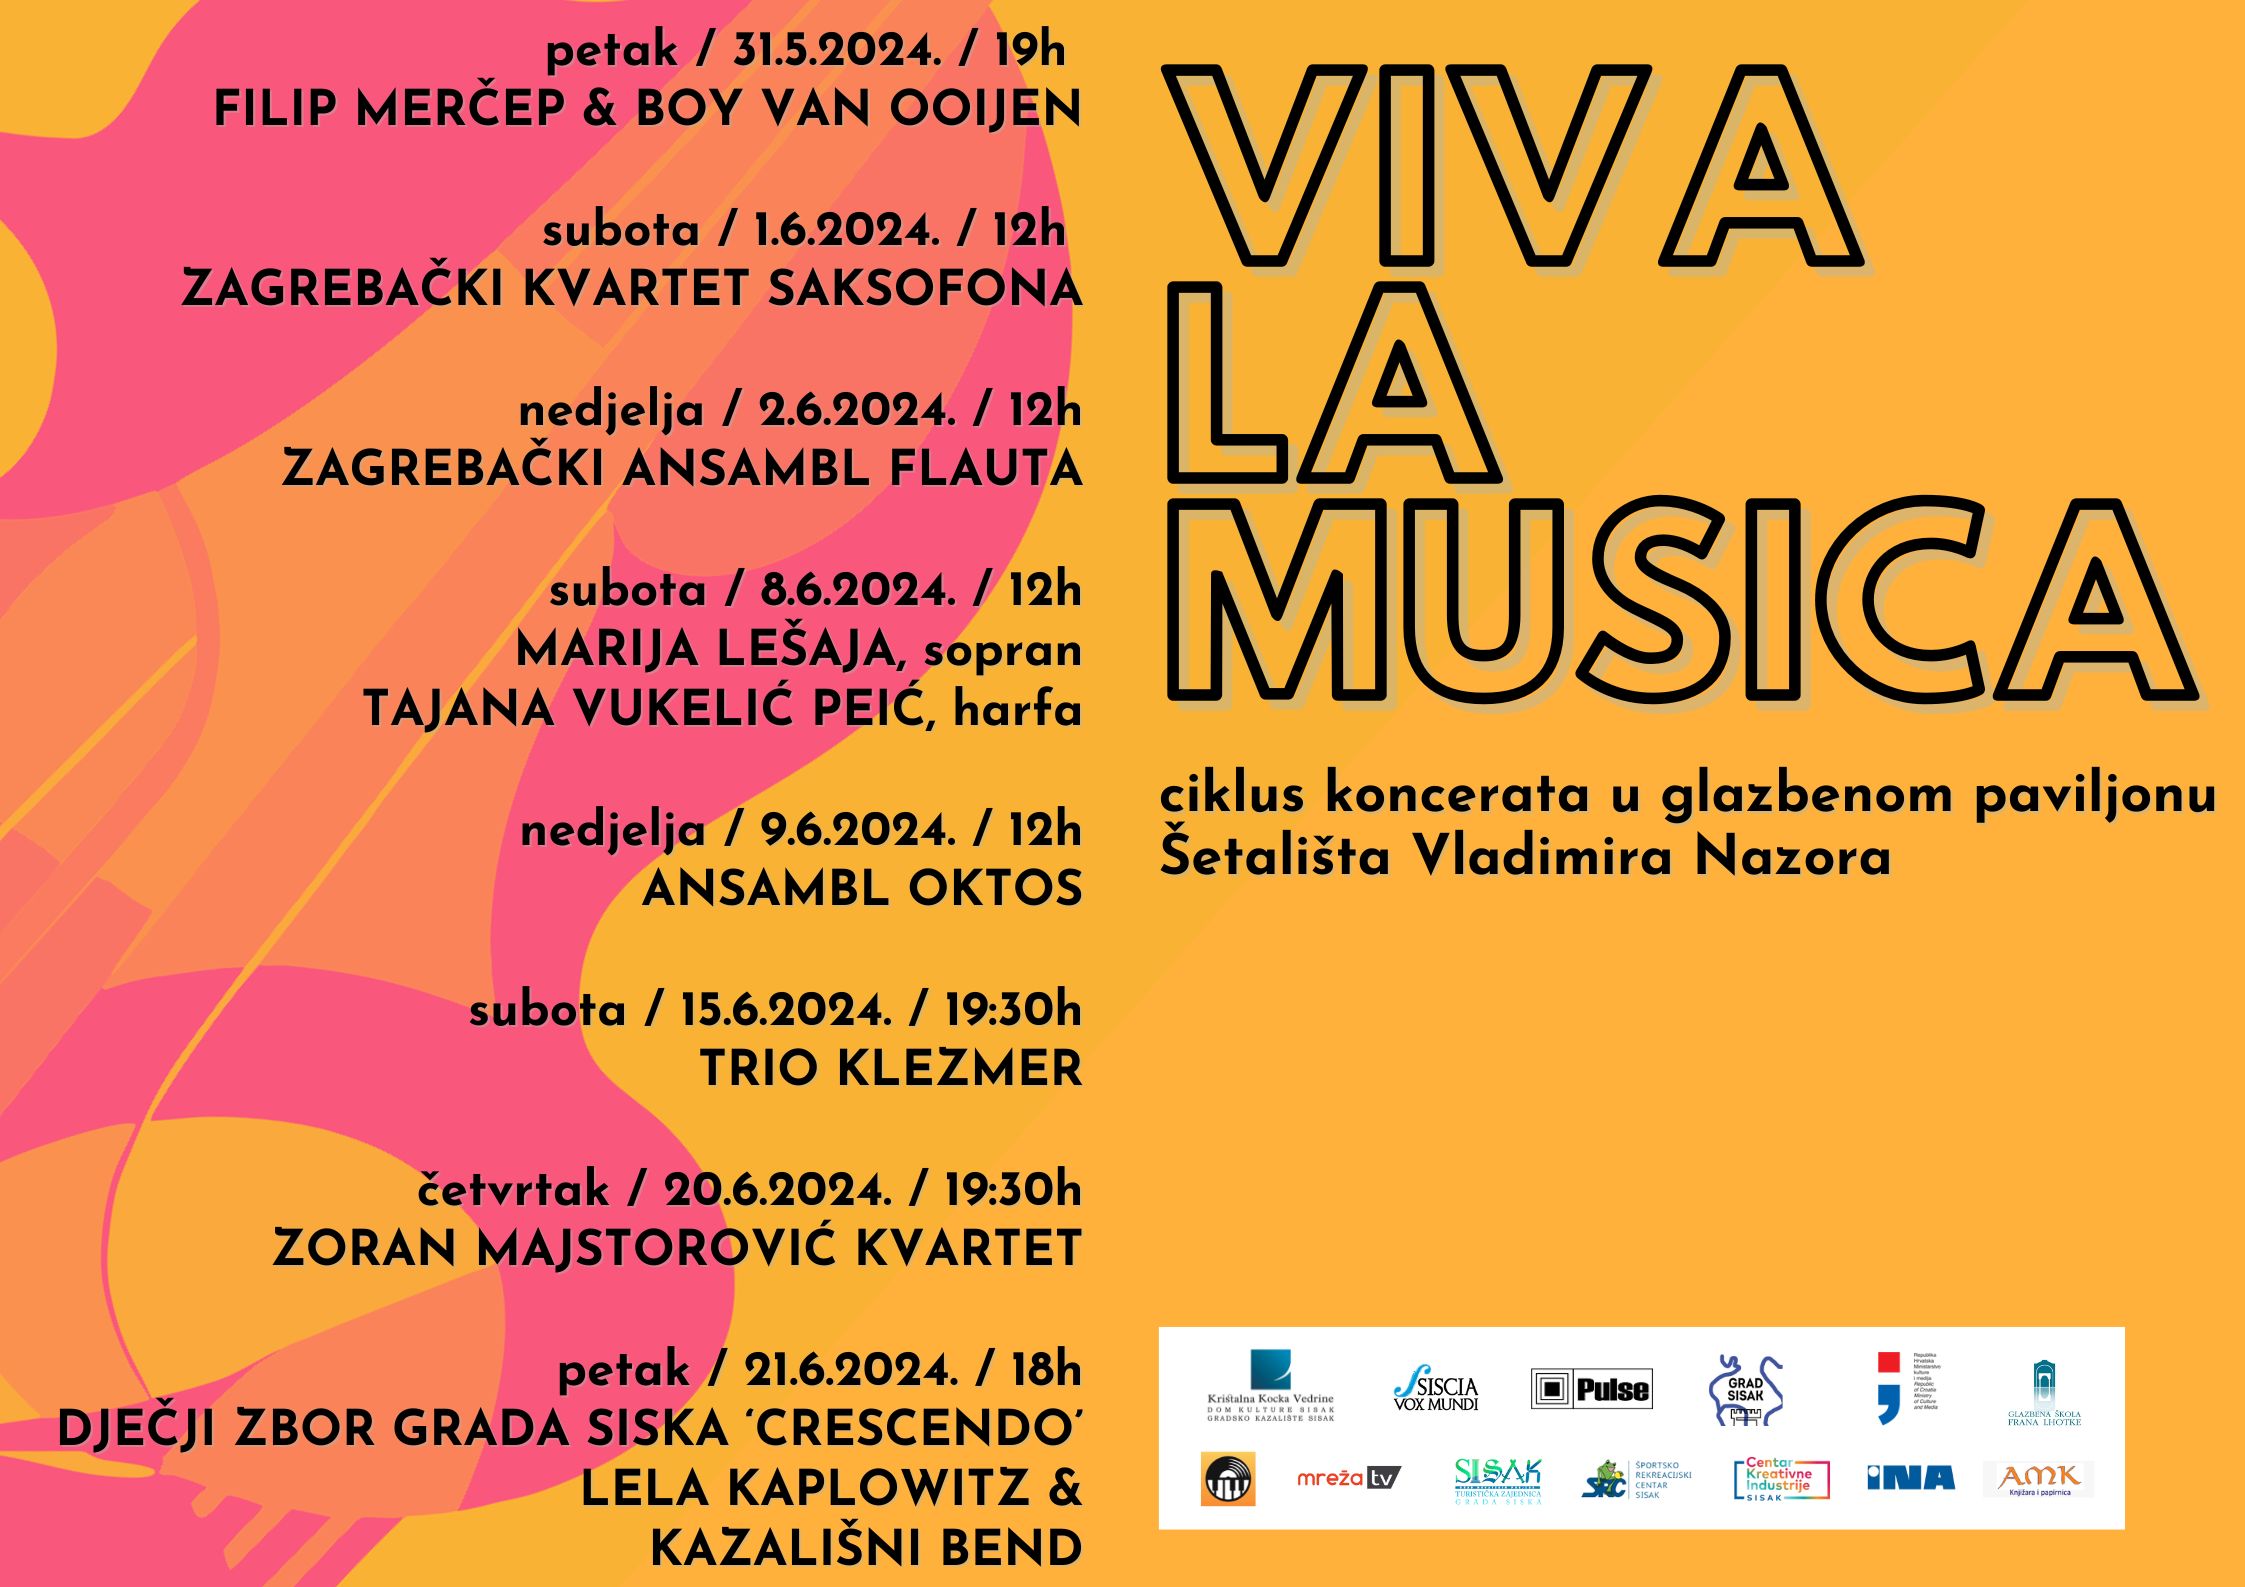 You are currently viewing Koncert Filipa Merčepa i Boy van Ooijena otvaraju ciklus koncerata “Viva la musica” u Sisku